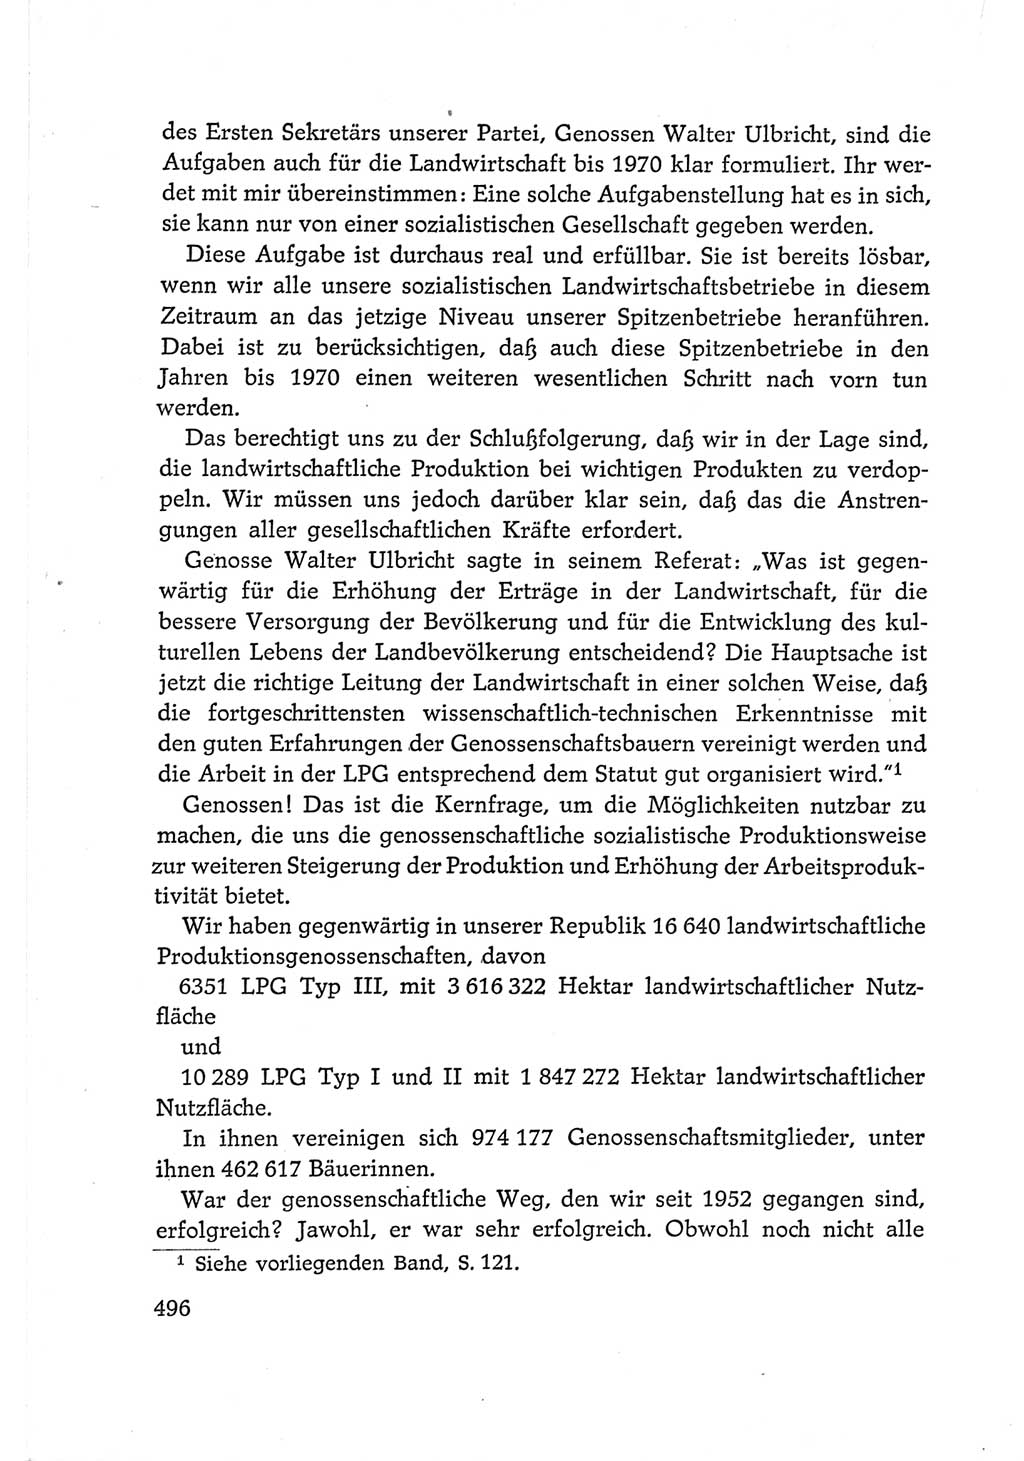 Protokoll der Verhandlungen des Ⅵ. Parteitages der Sozialistischen Einheitspartei Deutschlands (SED) [Deutsche Demokratische Republik (DDR)] 1963, Band Ⅰ, Seite 496 (Prot. Verh. Ⅵ. PT SED DDR 1963, Bd. Ⅰ, S. 496)